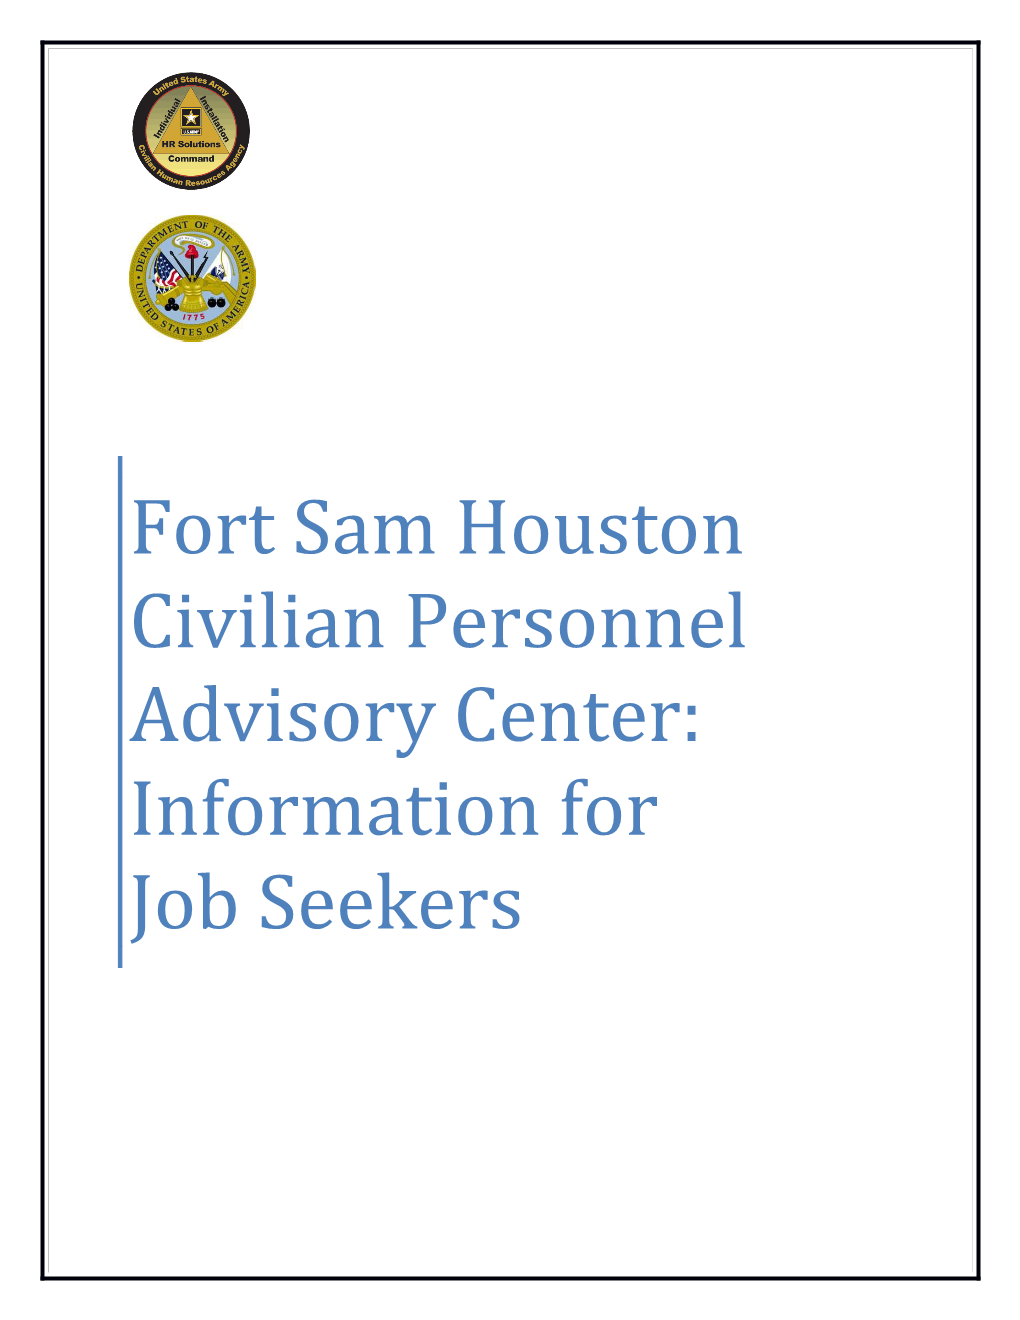 Fort Sam Houston Civilian Personnel Advisory Center: Information for Job Seekers